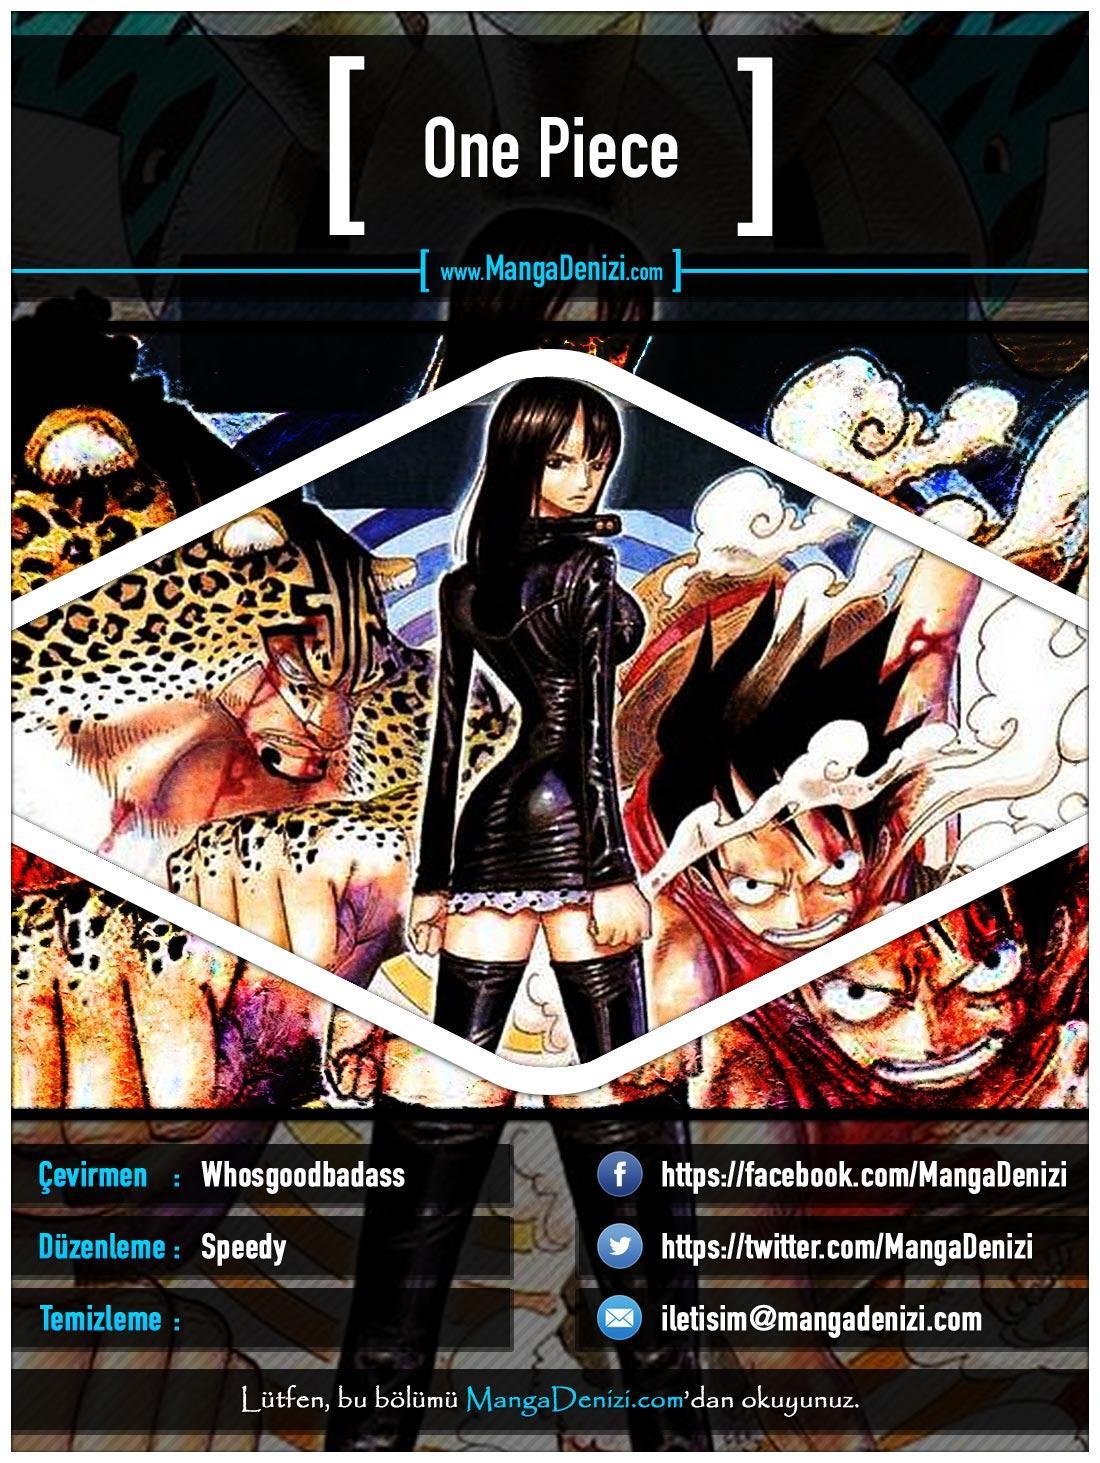 One Piece [Renkli] mangasının 0388 bölümünün 1. sayfasını okuyorsunuz.